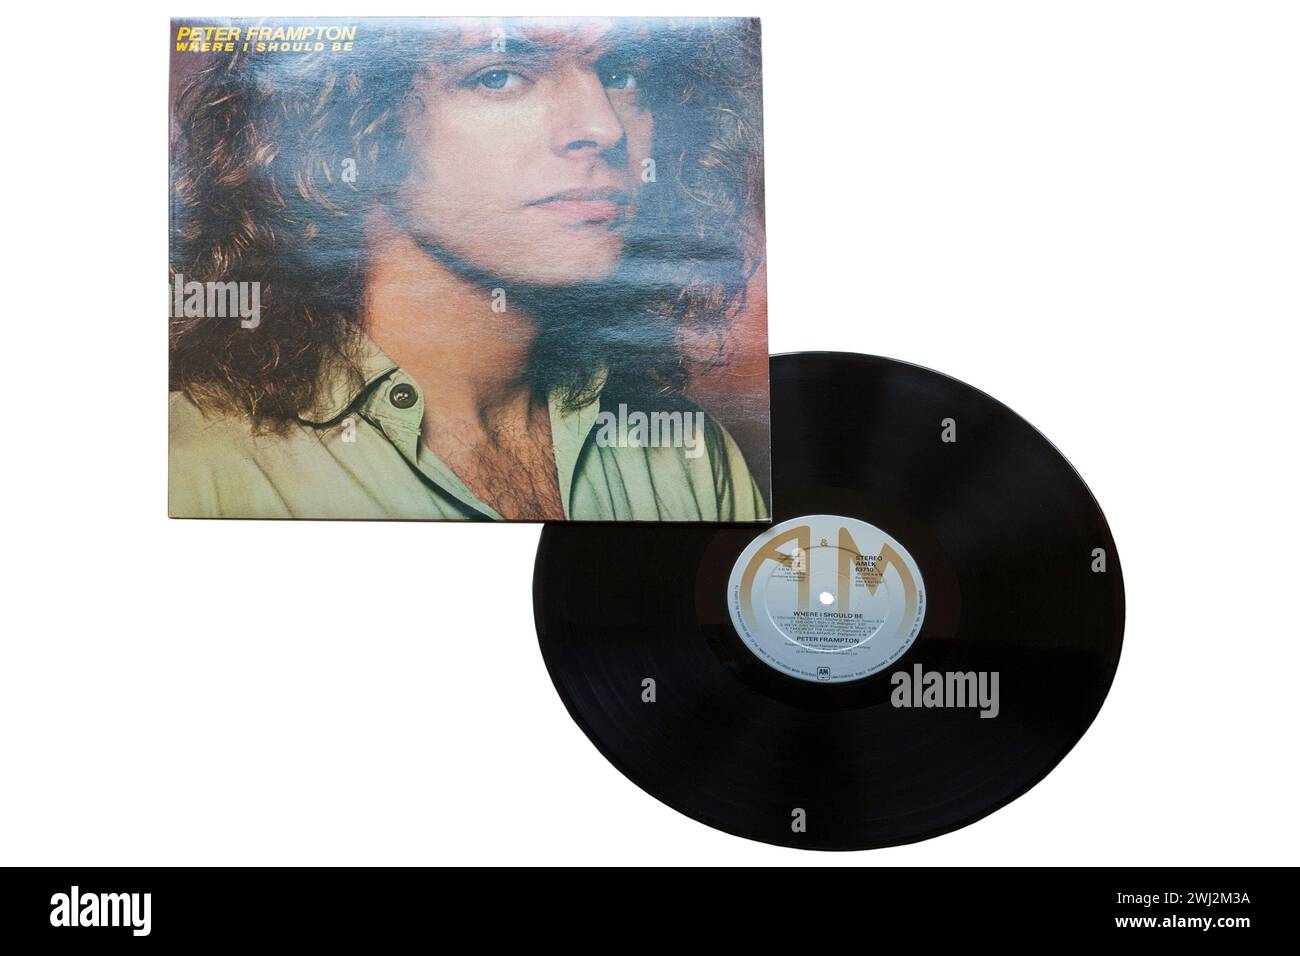 Peter Frampton Where I should Be Vinyl-Album-Cover isoliert auf weißem Hintergrund - 1979 Stockfoto